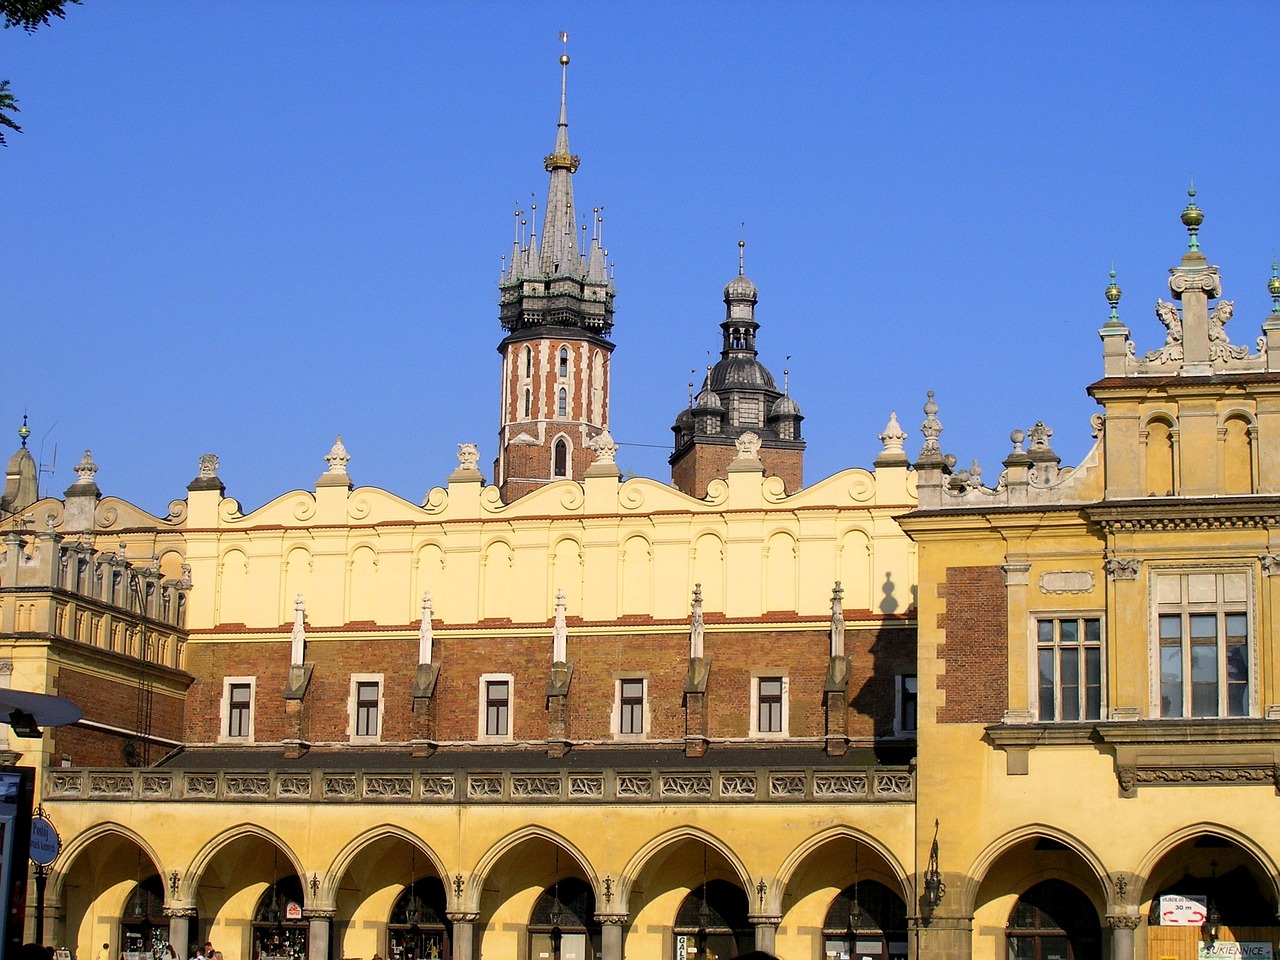 Zakup nieruchomości w Krakowie - bogata oferta biur nieruchomości